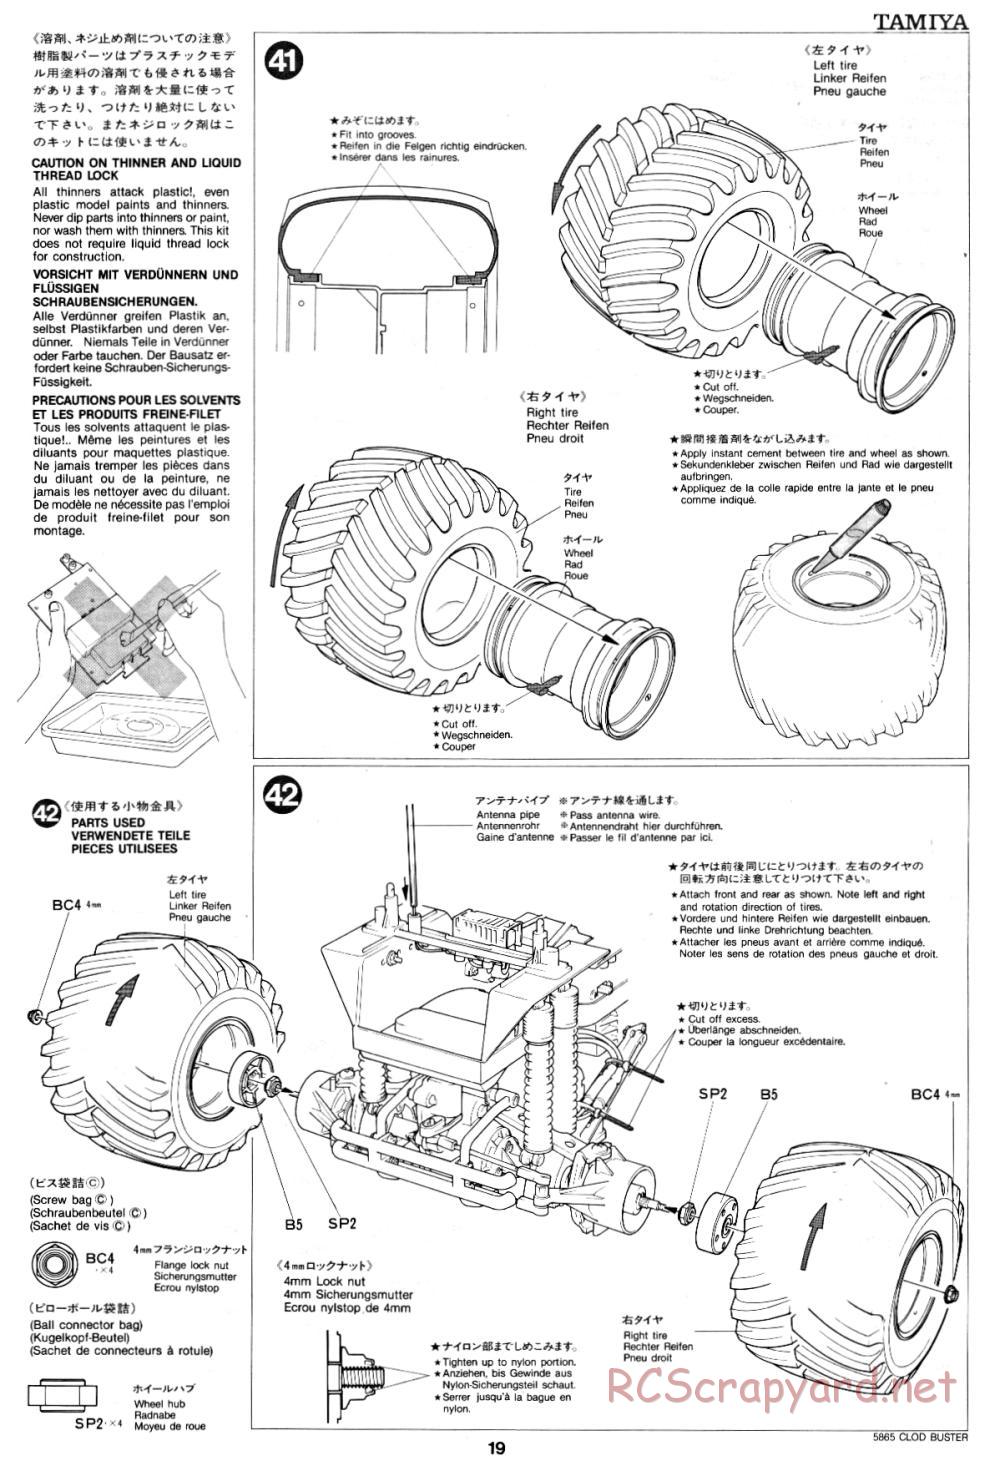 Tamiya - Clod Buster - 58065 - Manual - Page 19